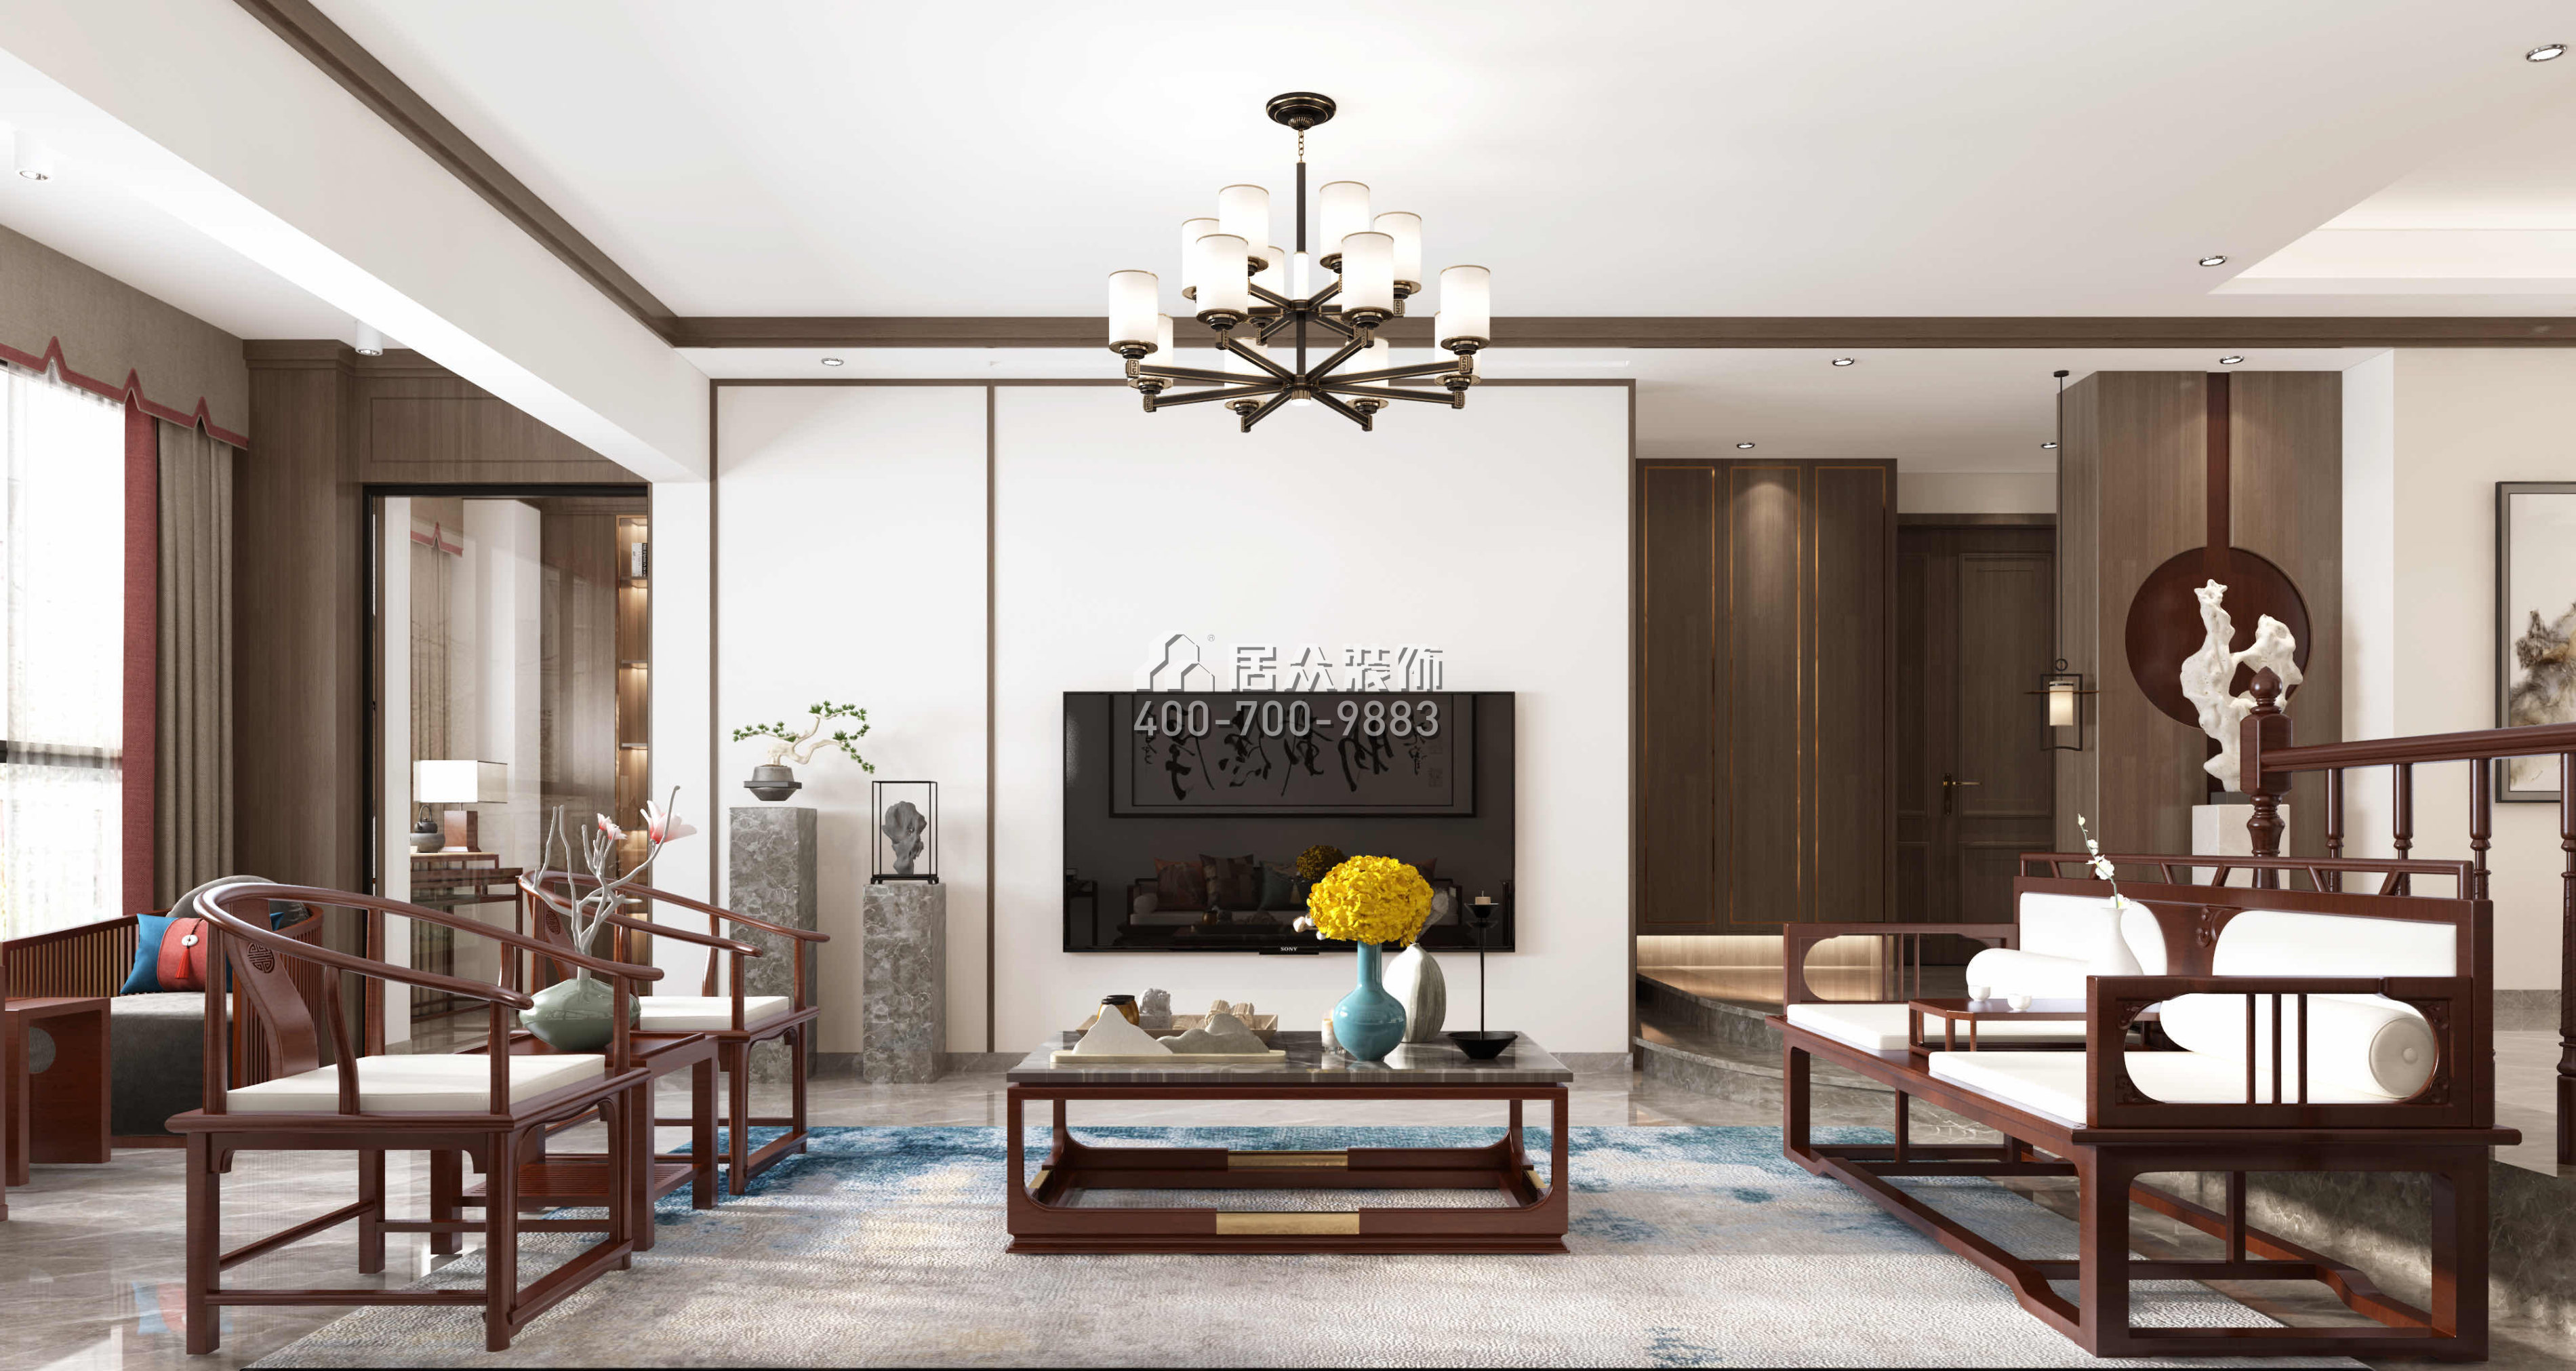 錦繡國際花城200平方米中式風格平層戶型客廳裝修效果圖